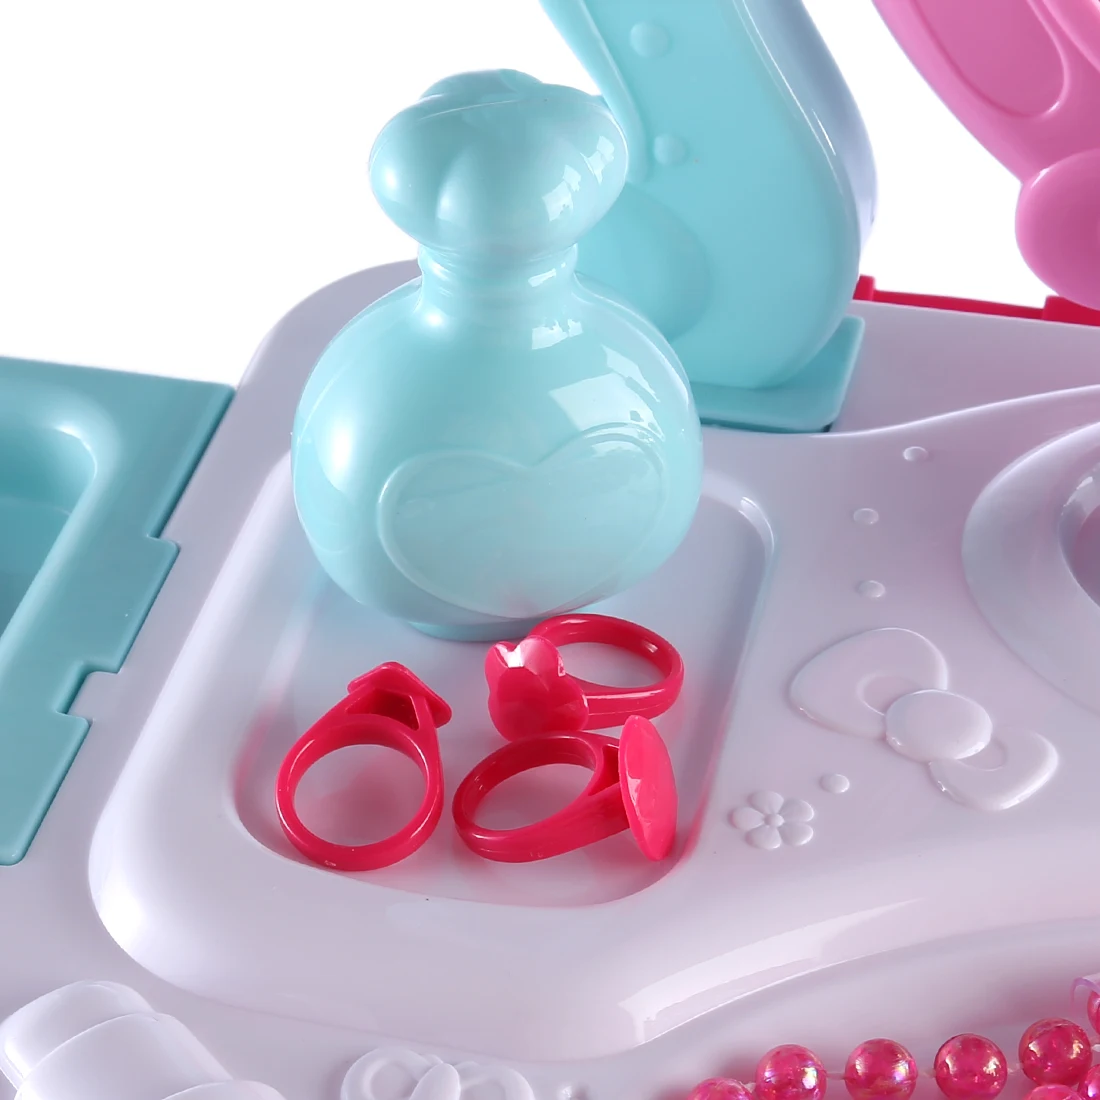 Дети инструмент для нанесения макияжа наборы ролевые игры Workbench Playset обучающая игрушка с органайзером для багажа-розовый